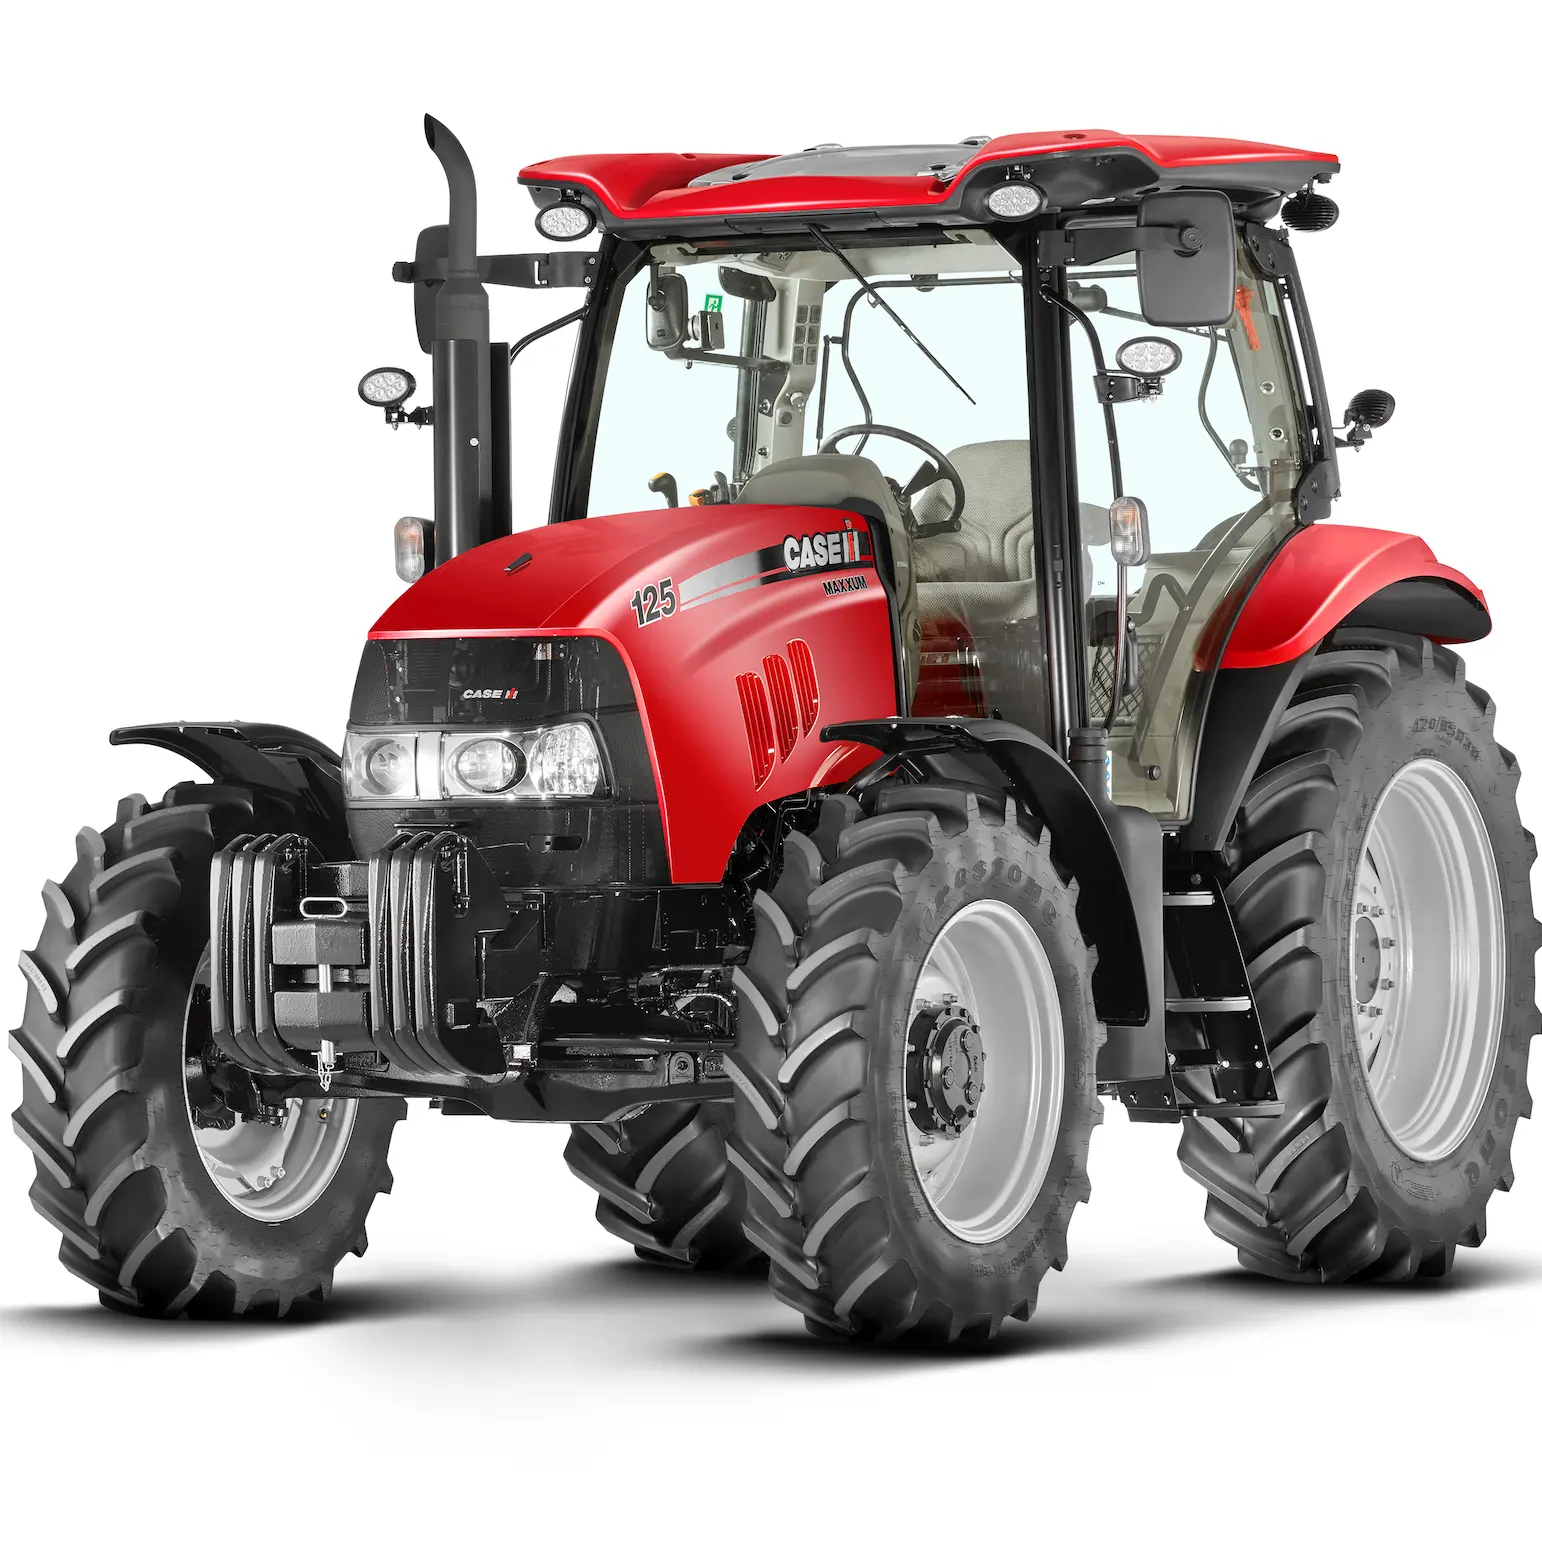 Toptan en iyi kalite japonya Made Case IH tarım traktör tarım traktör